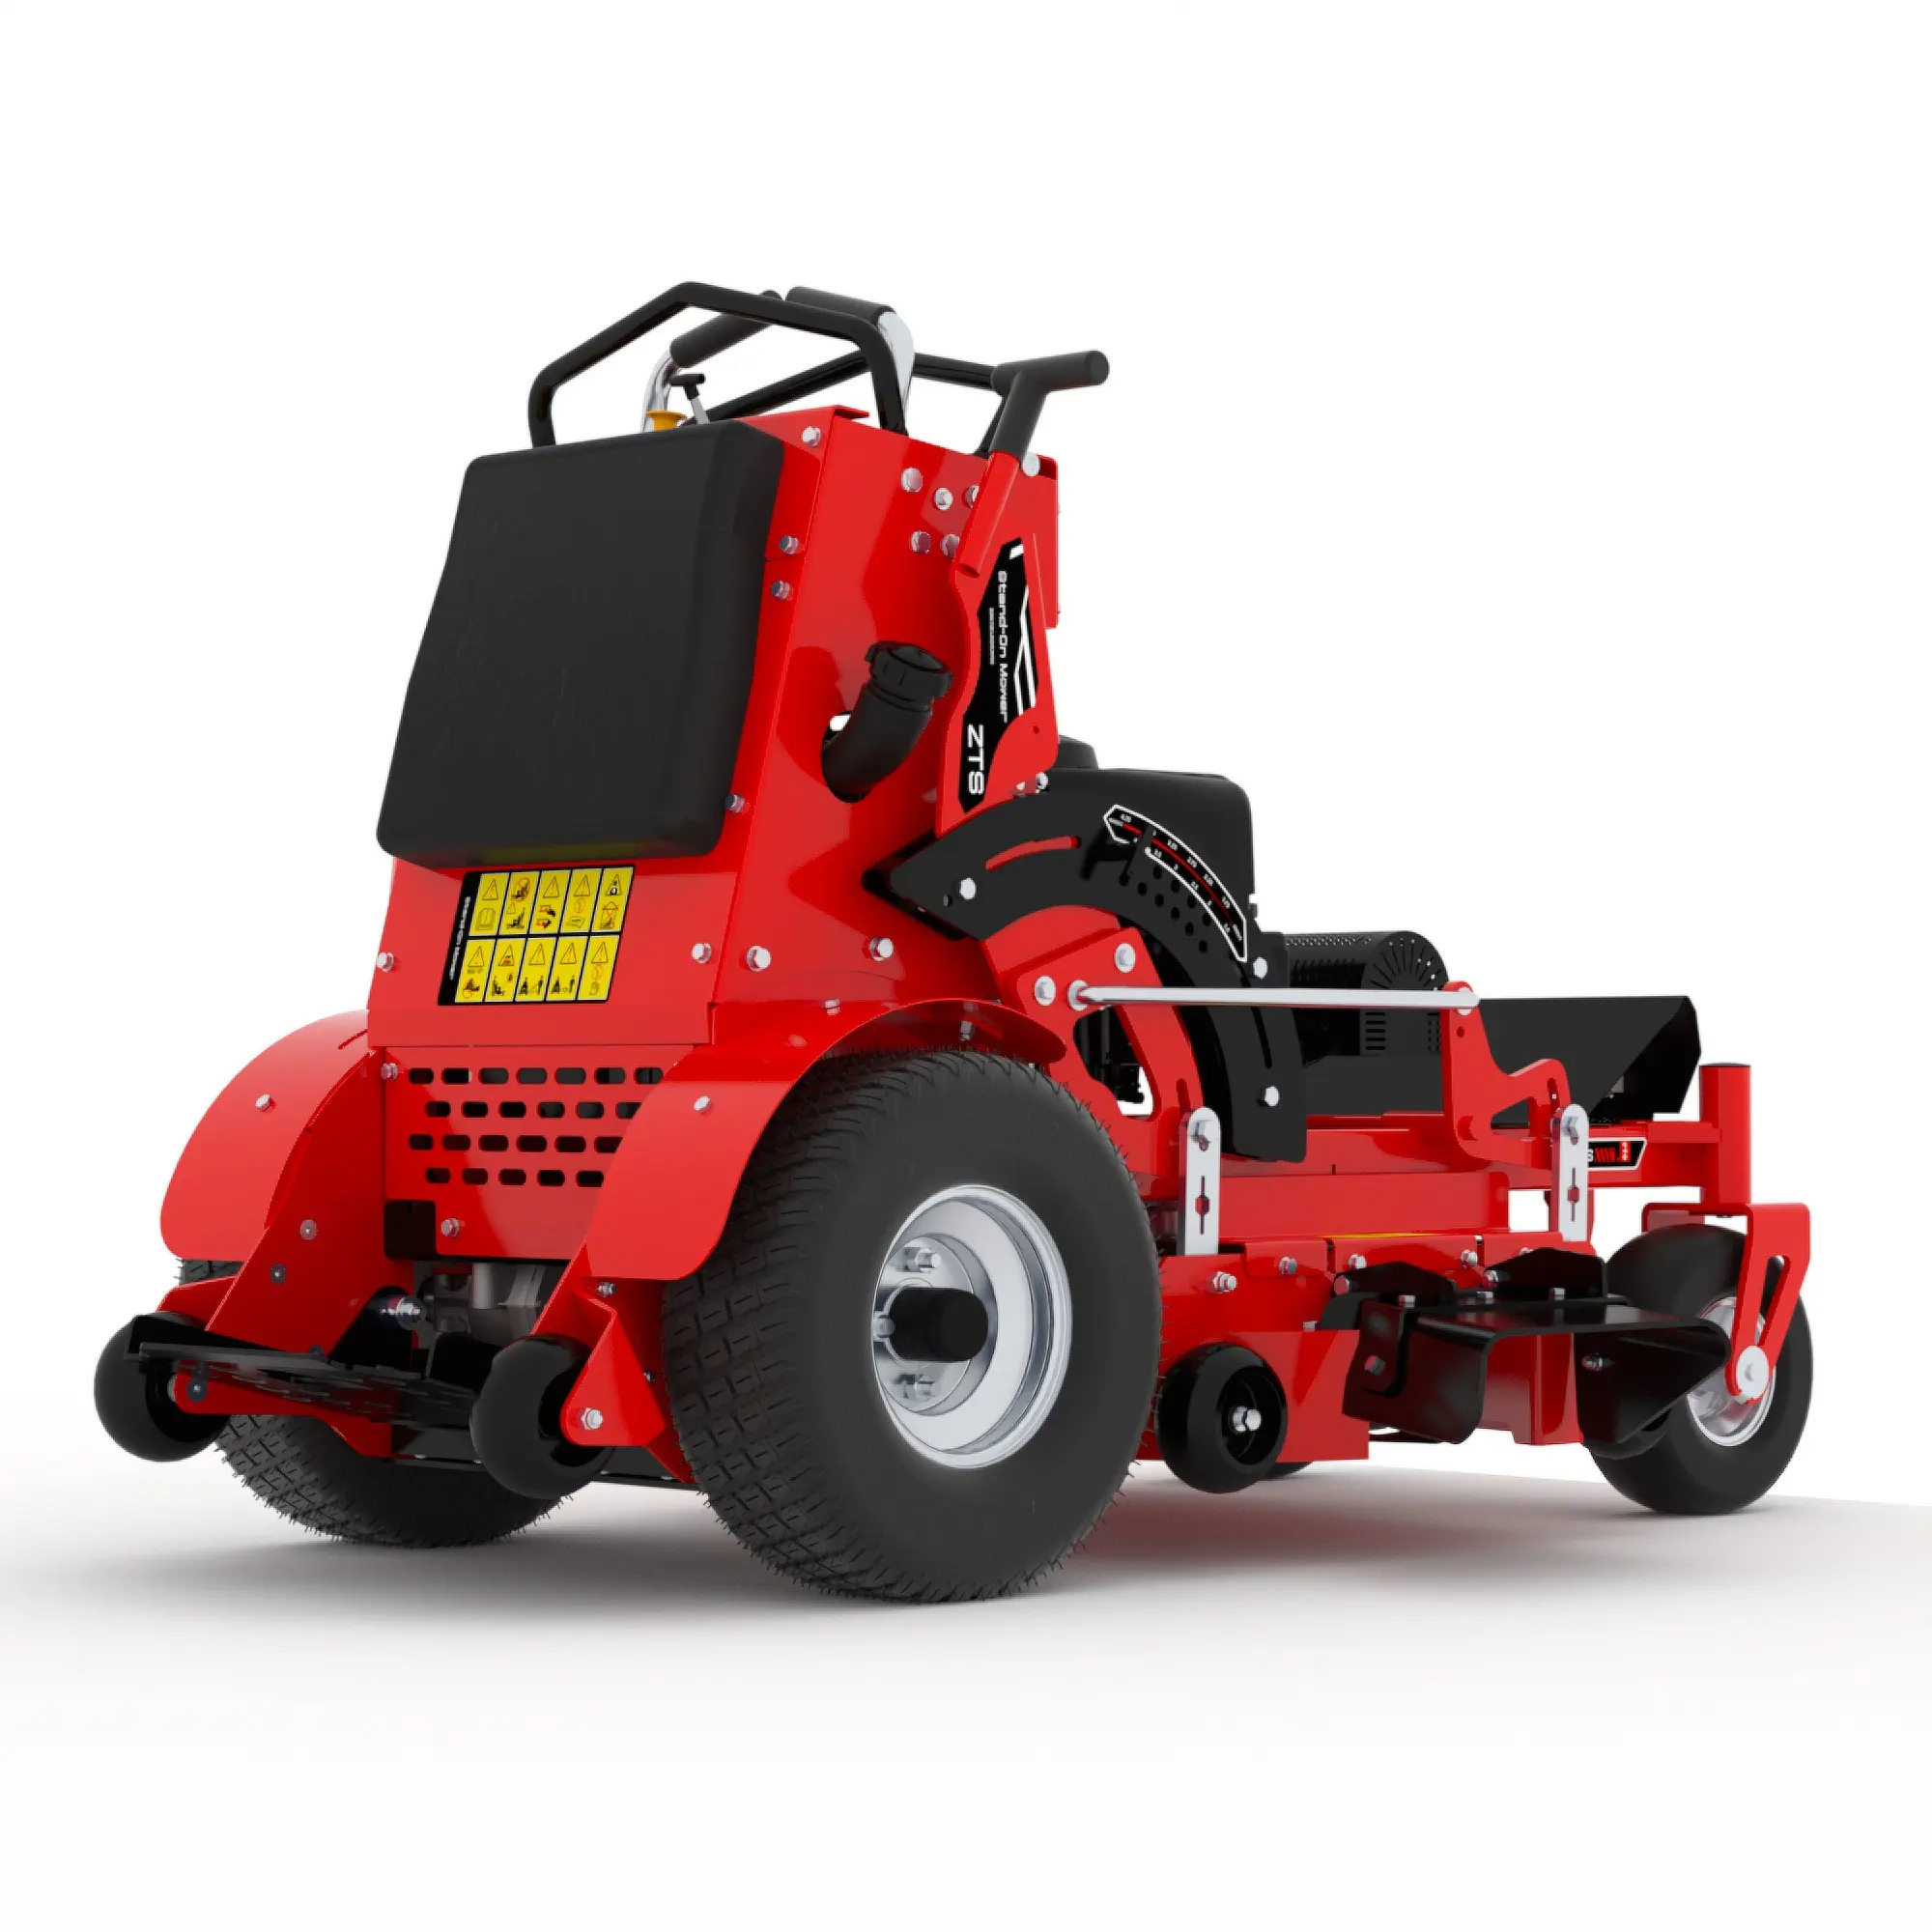 芝刈り機のOEM ODM商用品質高効率強力パワースタンド